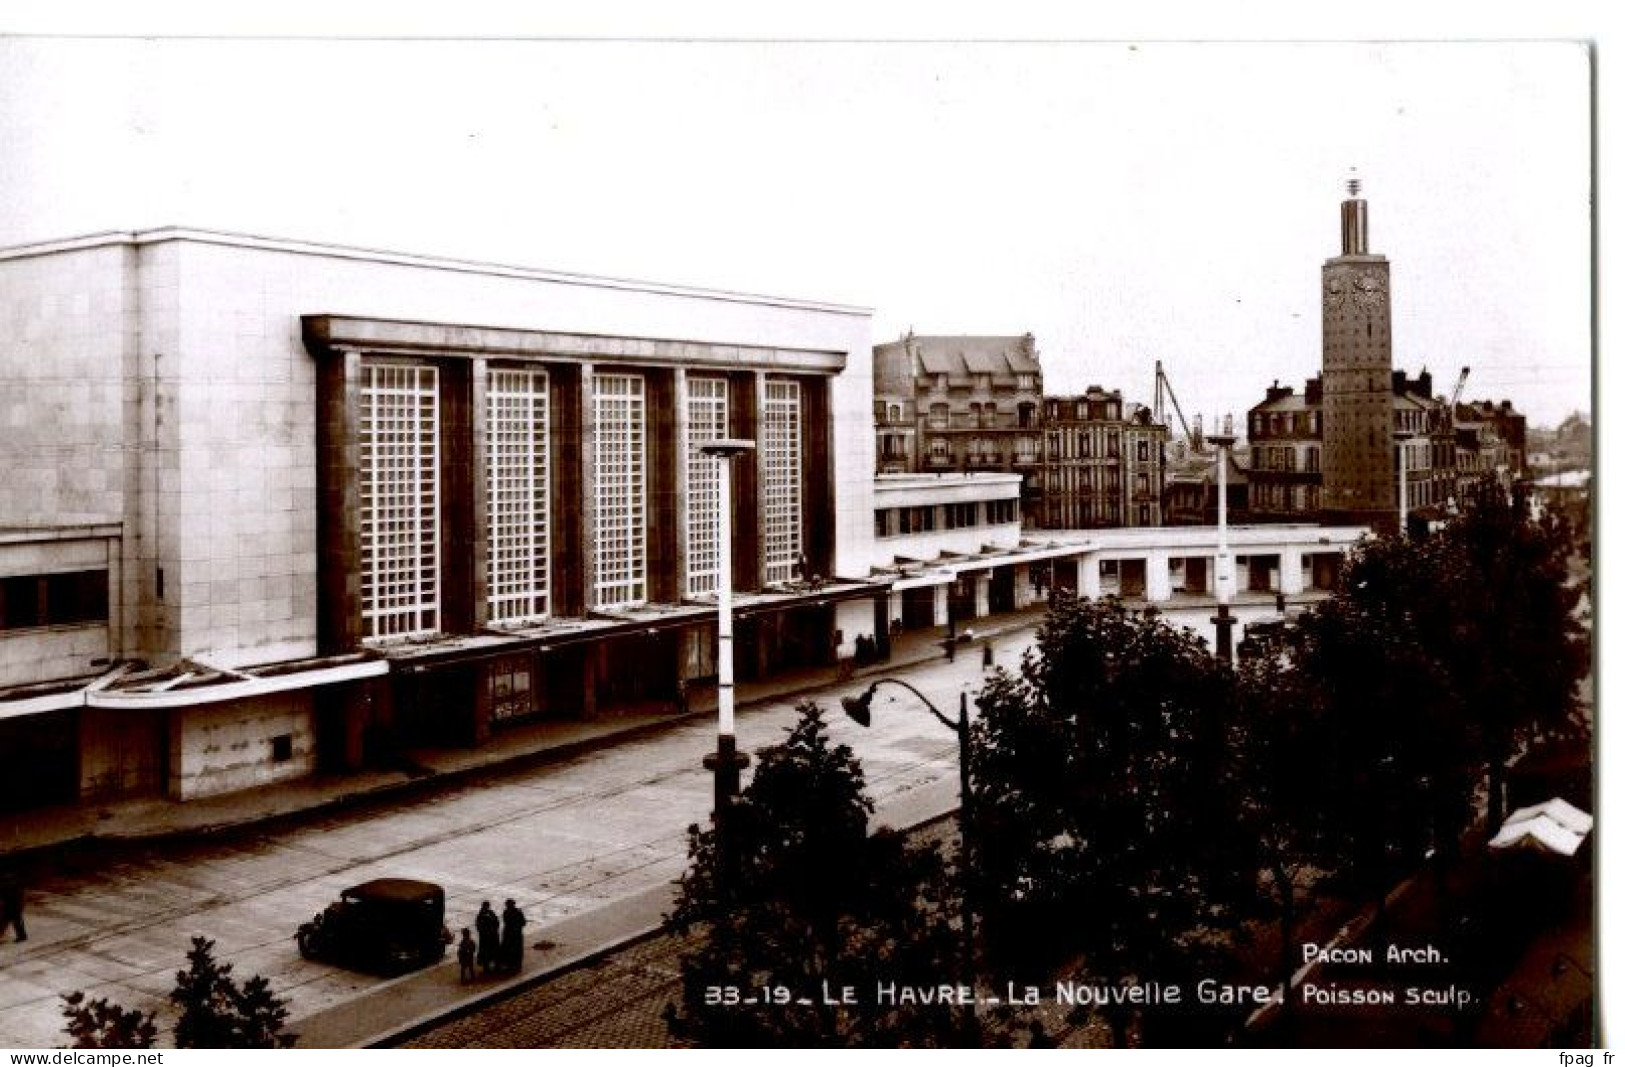 Le Havre (76 - Seine Maritime) - 33 - 19 - La Nouvelle Gare - Poisson Sculp. - Station